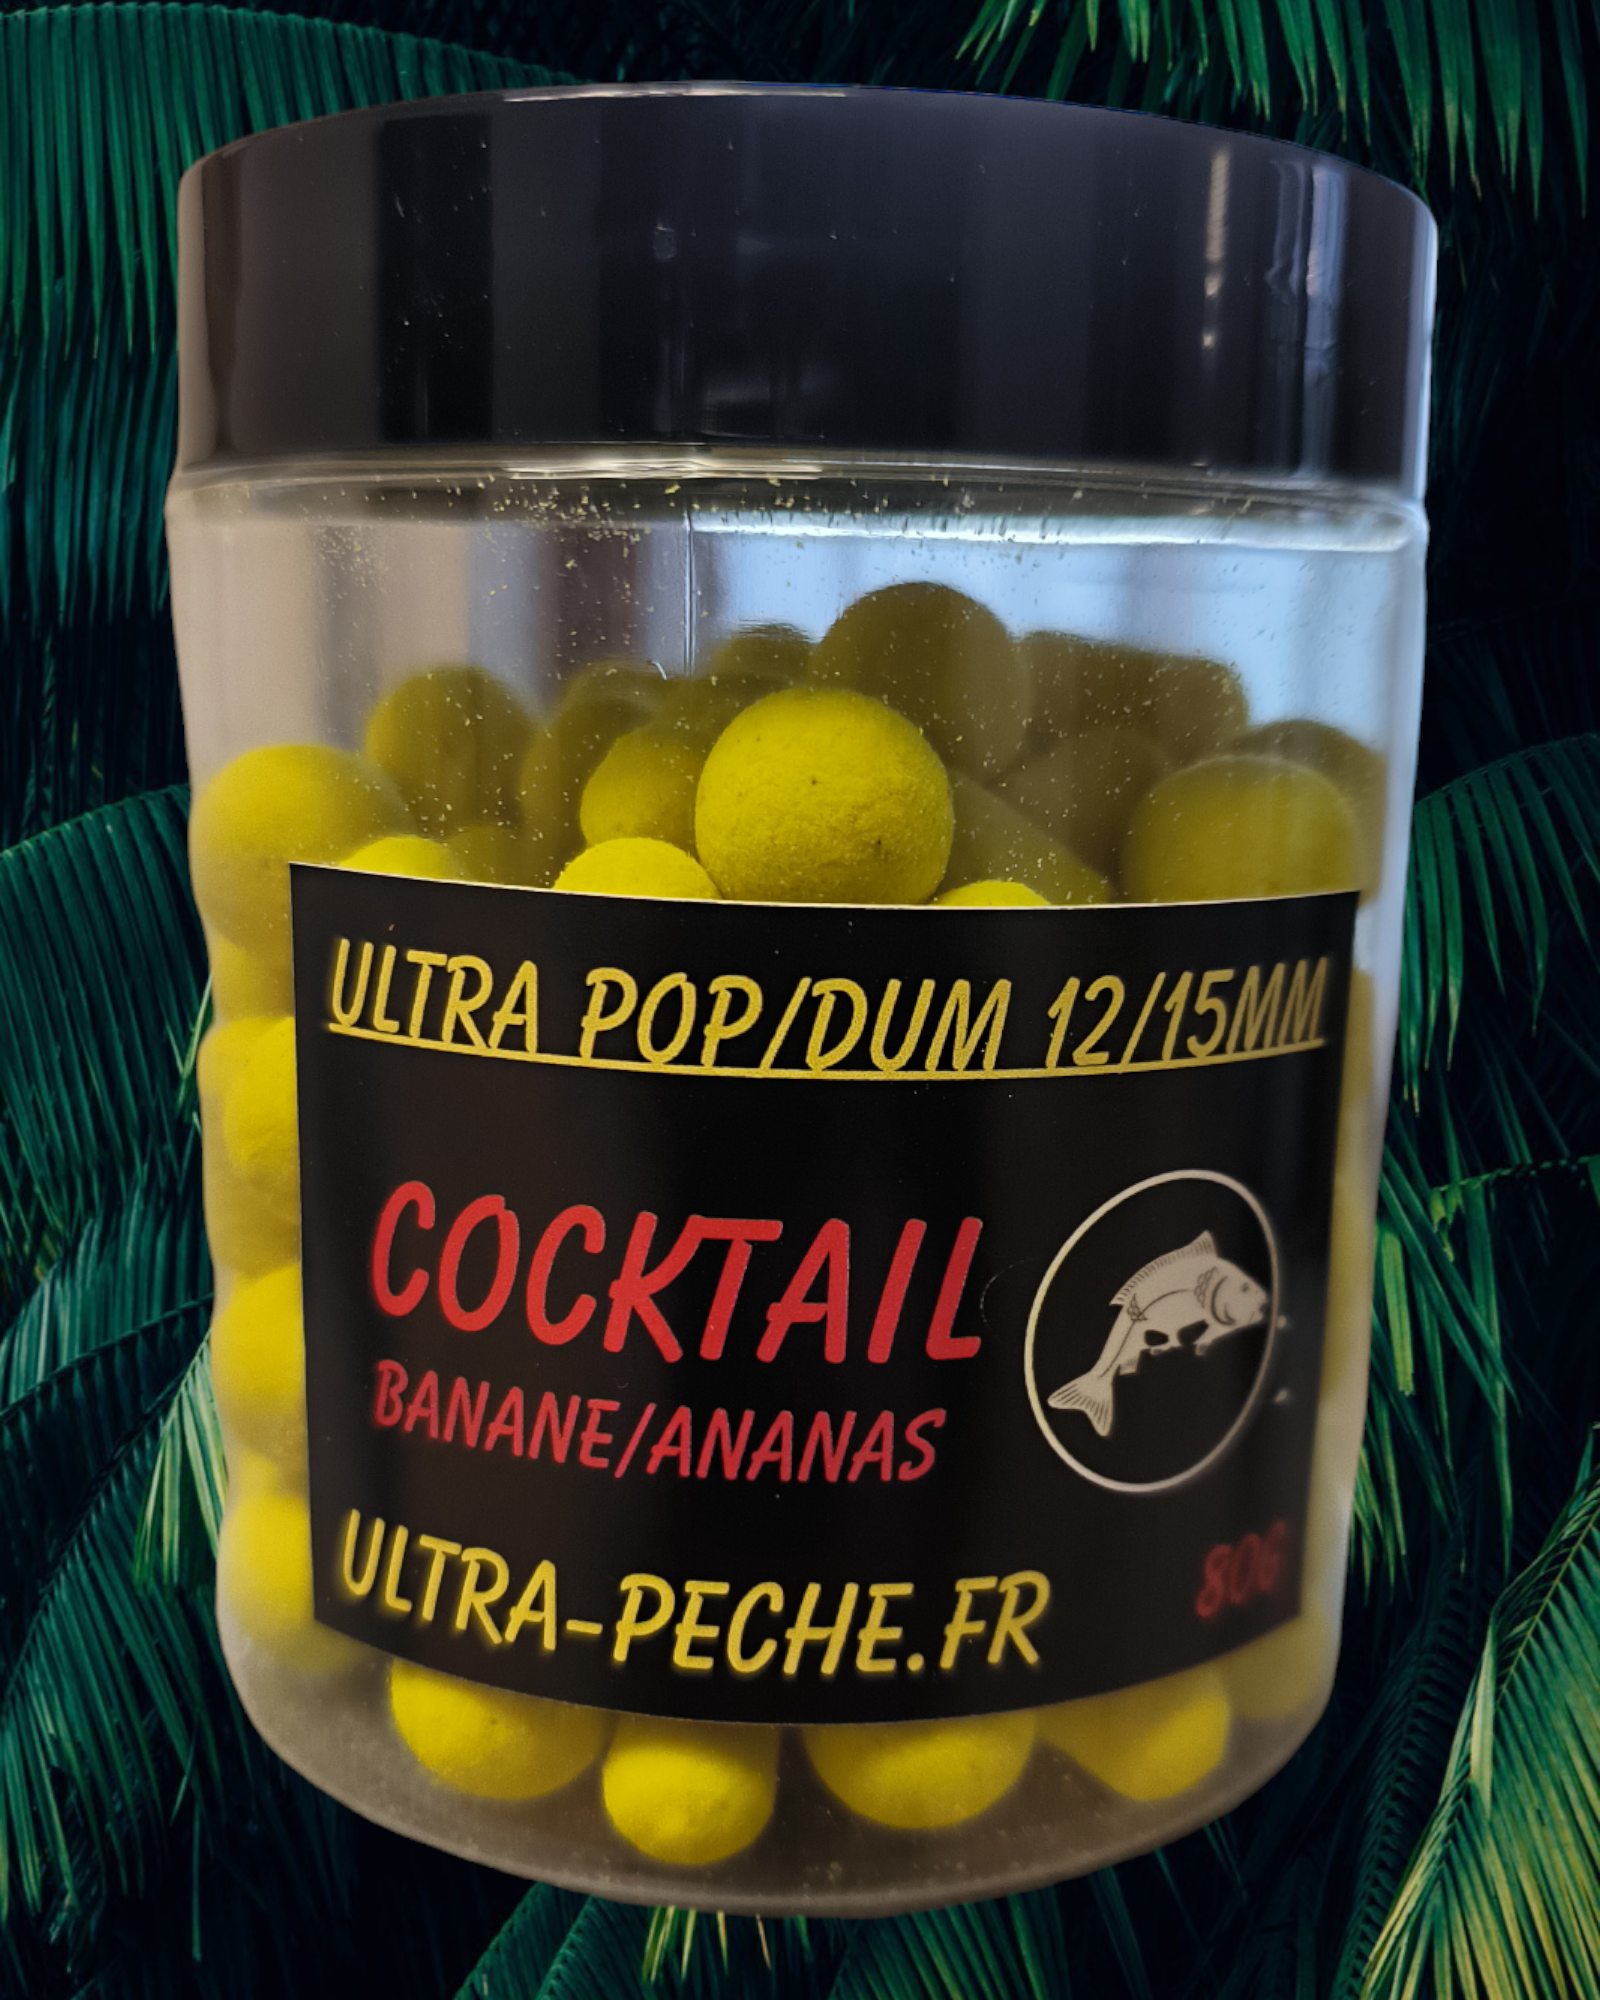 POP UP 12mm/DUMBELL 15mm COCKTAIL 80g Ultra-peche Banane/Ananas